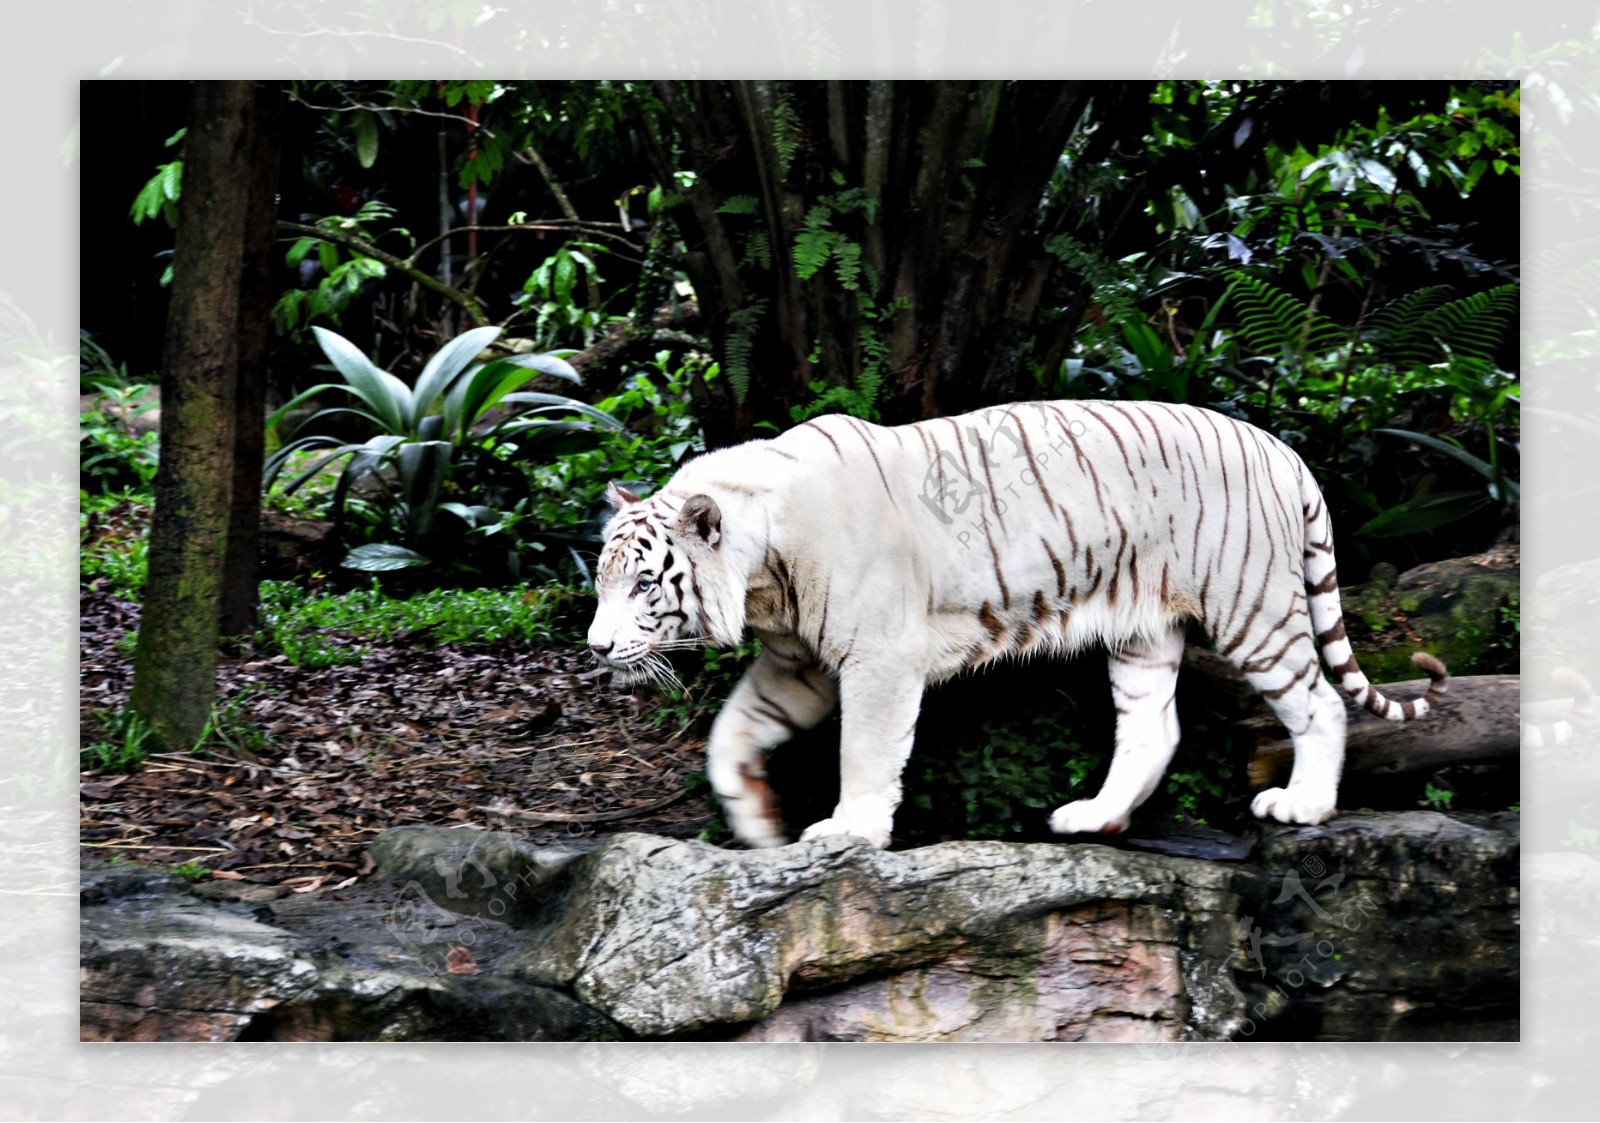 向左移动的白色老虎